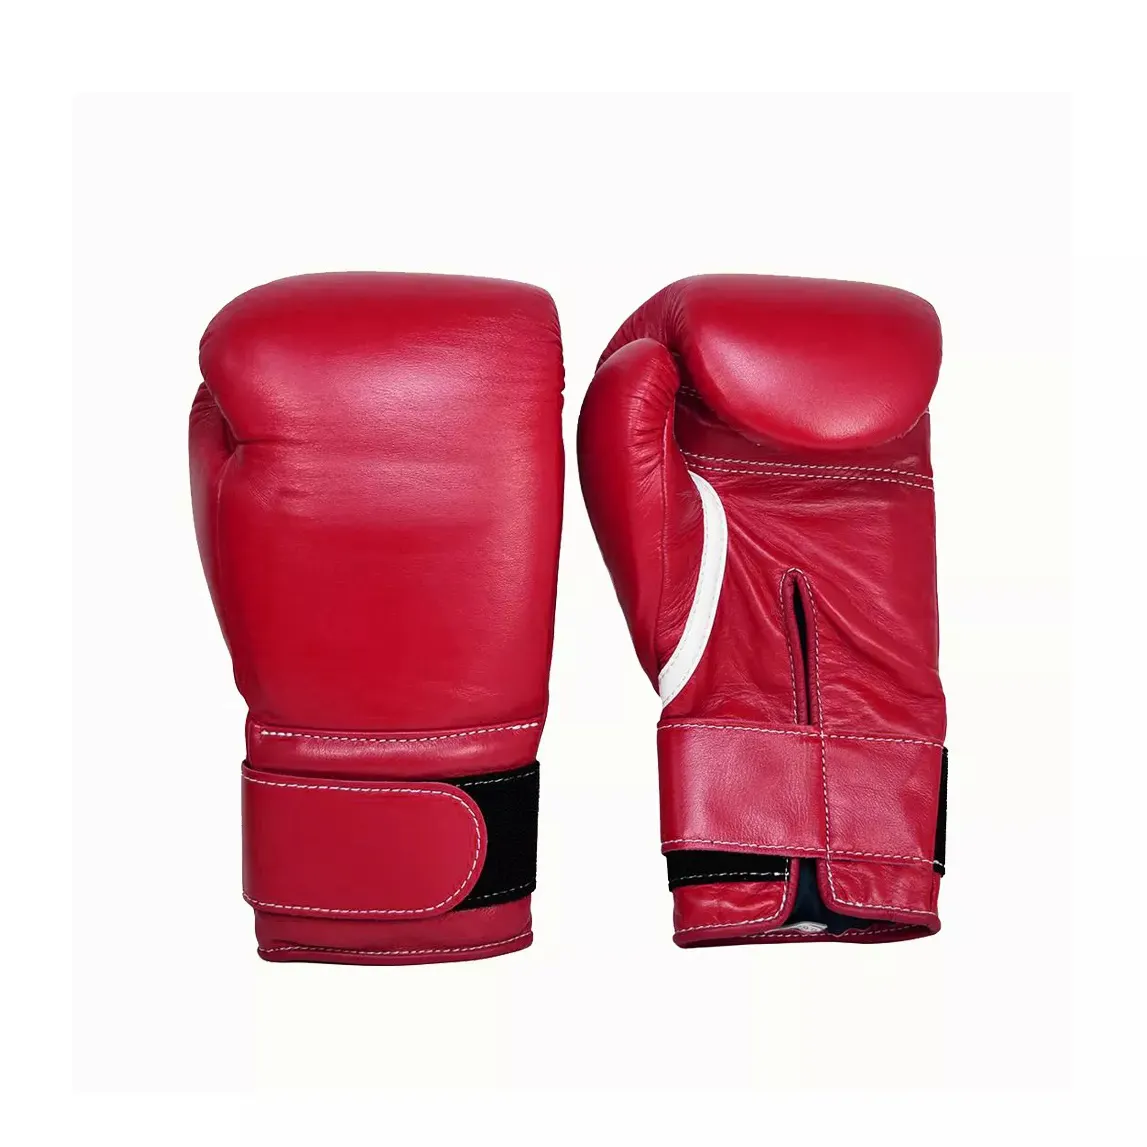 Luvas de boxe vermelho de couro puro Melhores comentários em boxe ring luvas saudáveis e respiráveis com opção de personalização (rótulos, cinta)